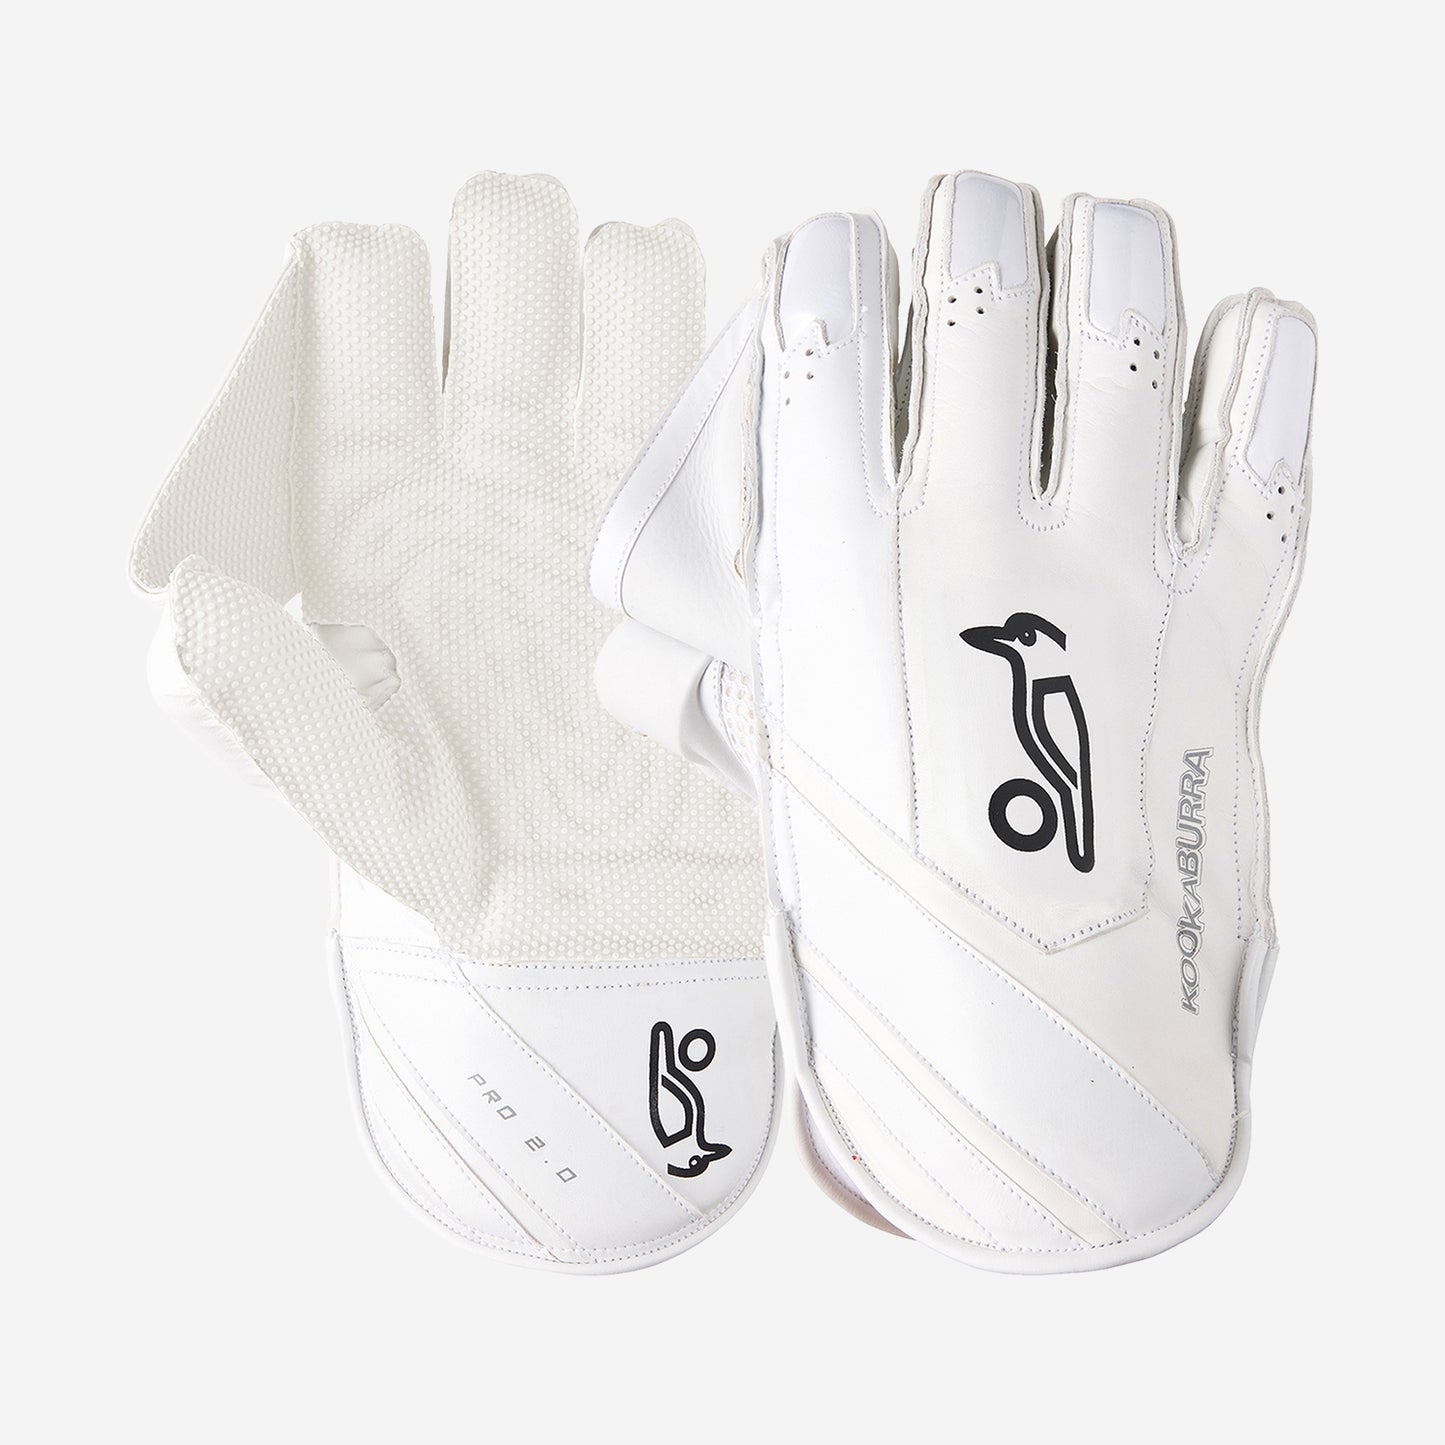 KKB Ghost Pro 2.0 WK Gloves